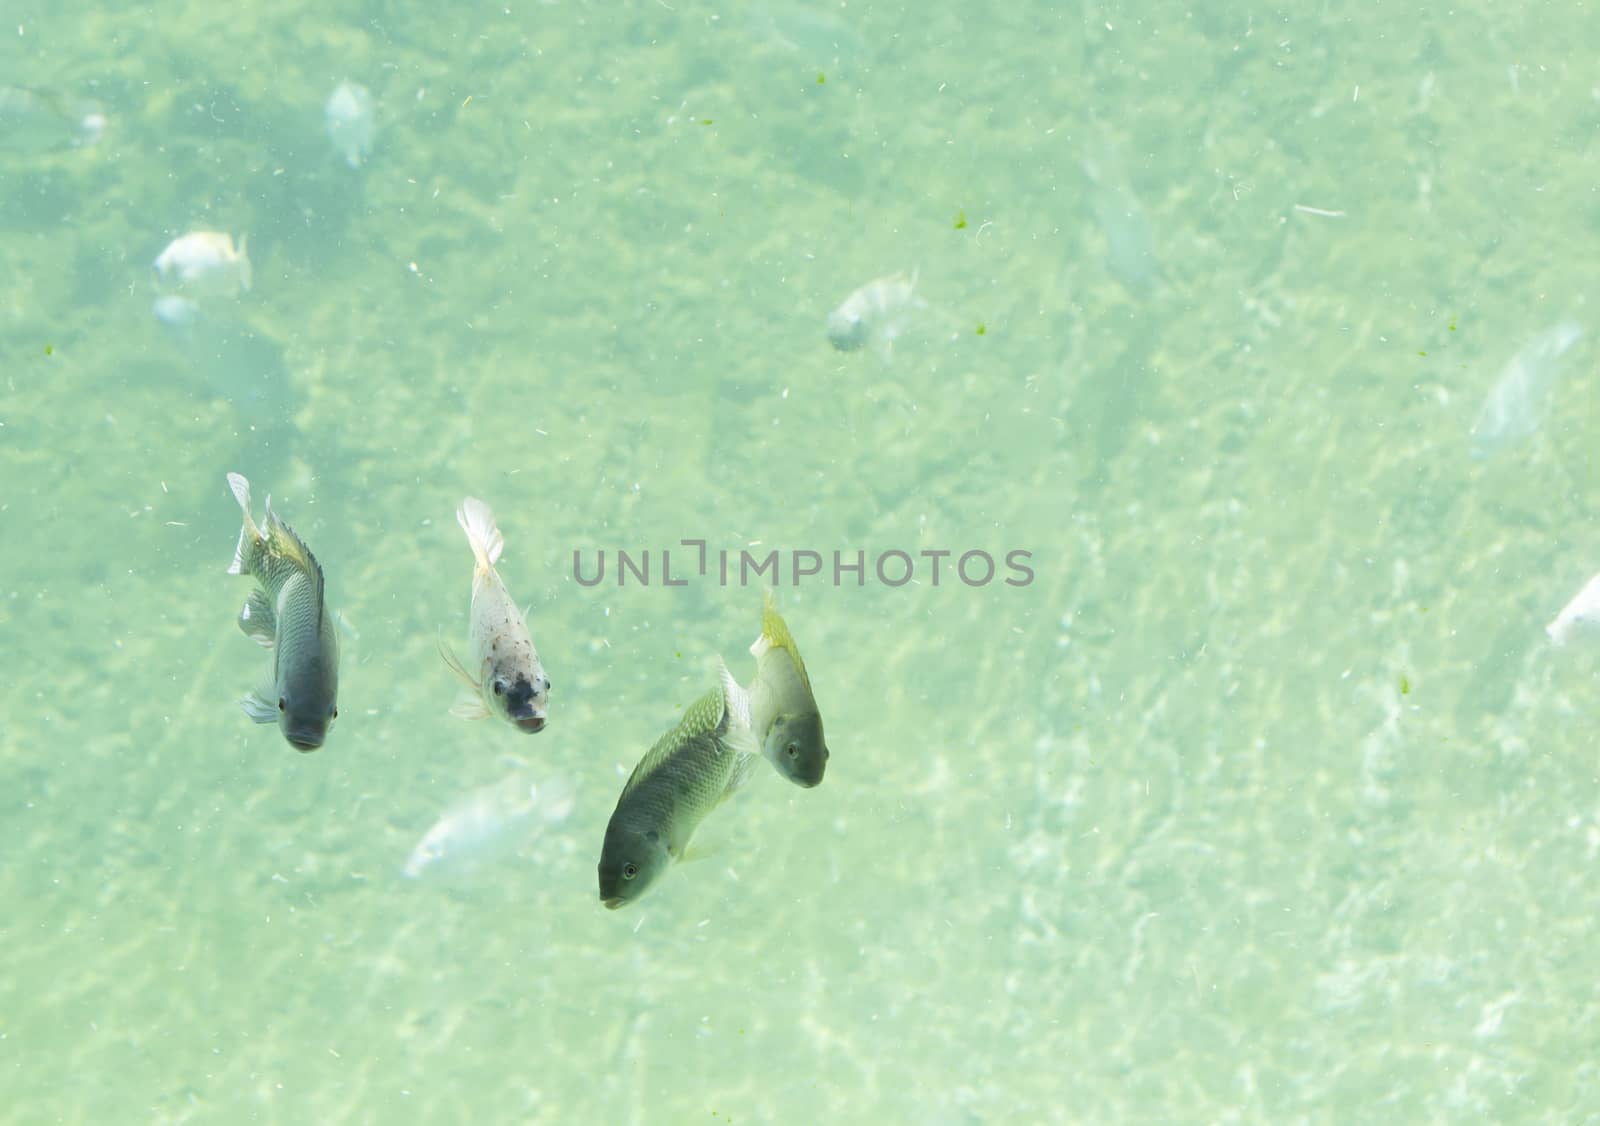 Zambezi river fish in freshwater